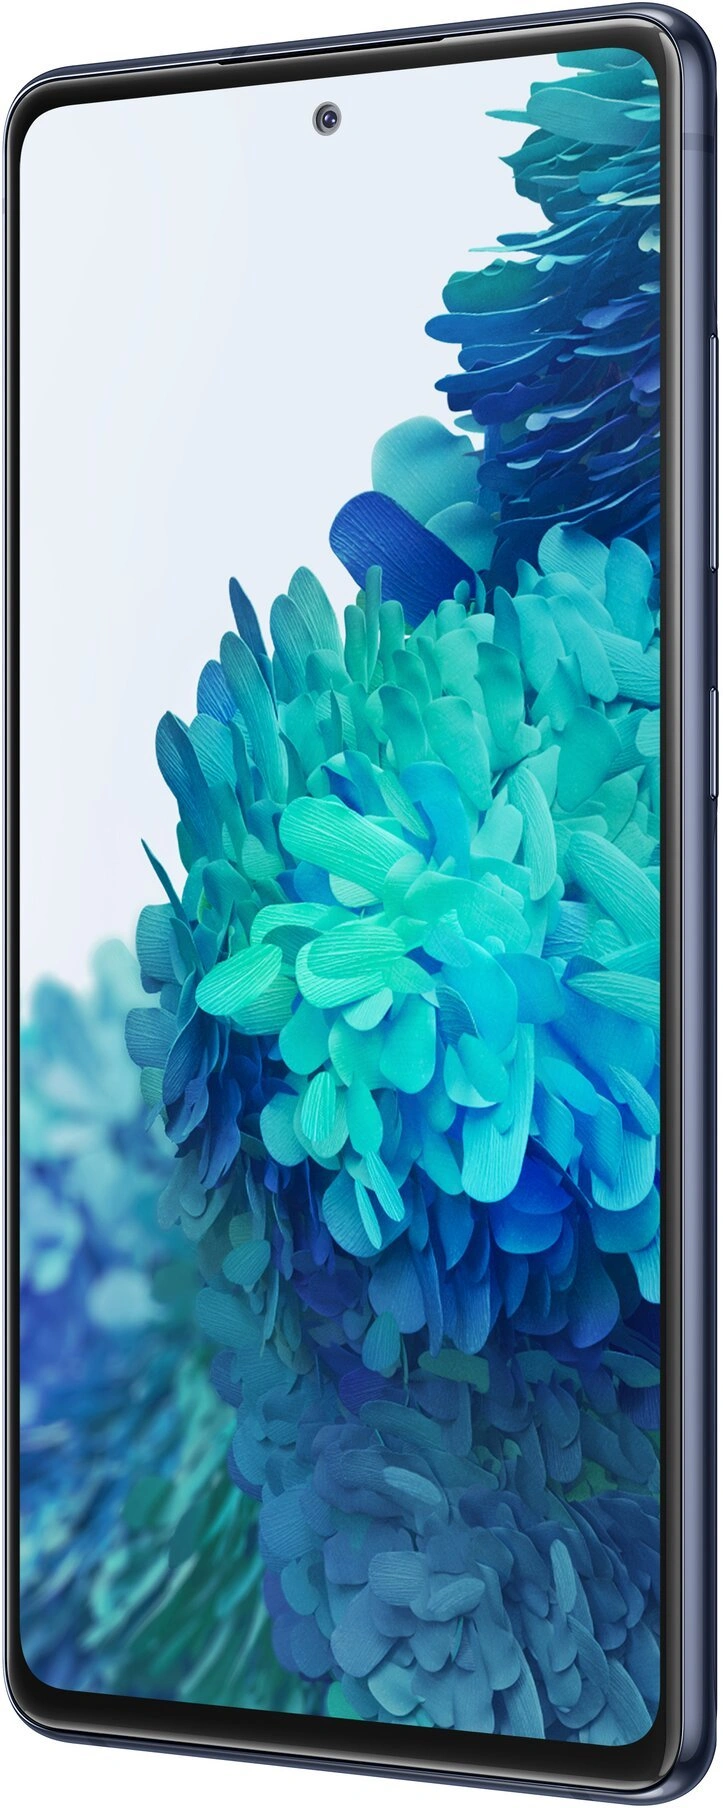 Samsung Galaxy S20 FE 6/128 GB 5G, Navy Blue